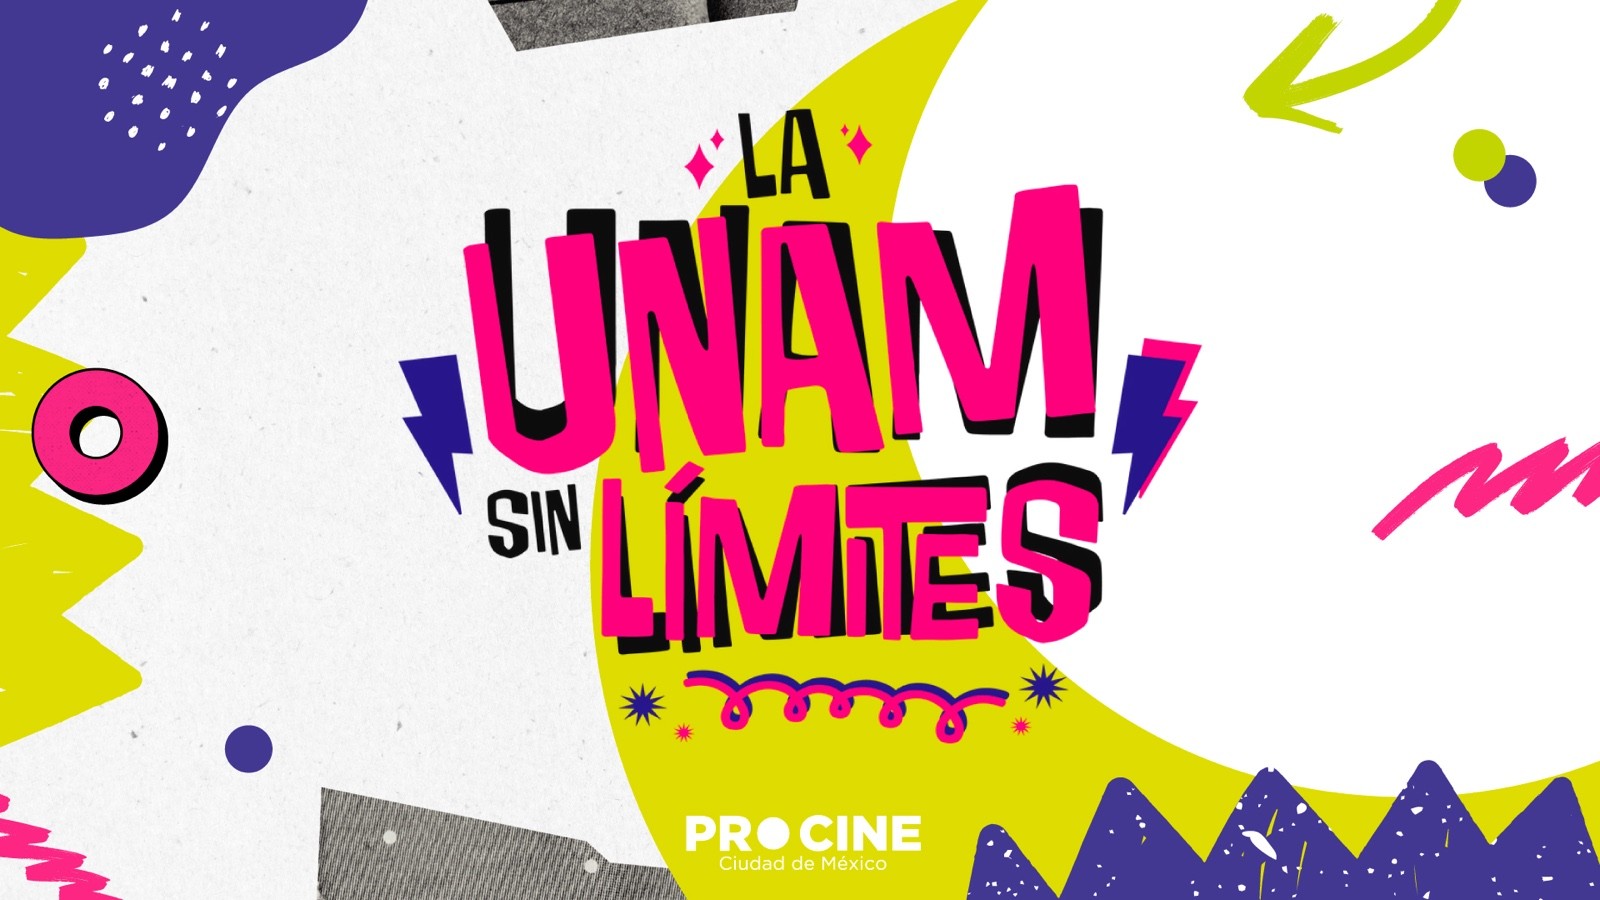 La UNAM sin límites